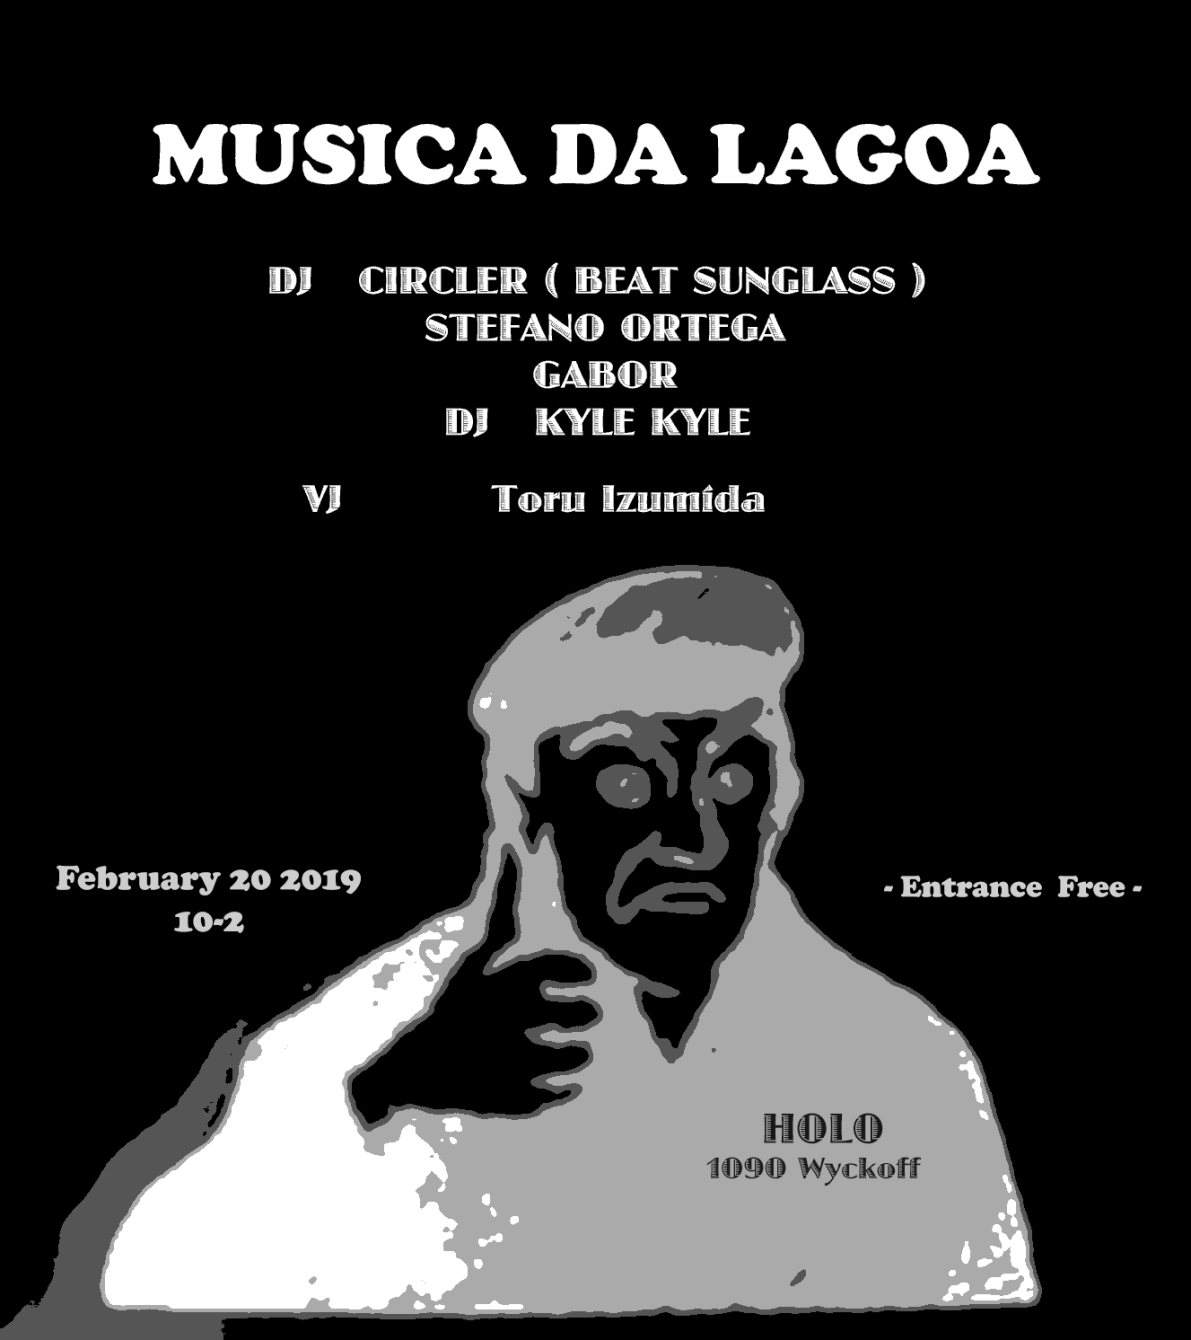 Musica Da Lagoa - フライヤー表